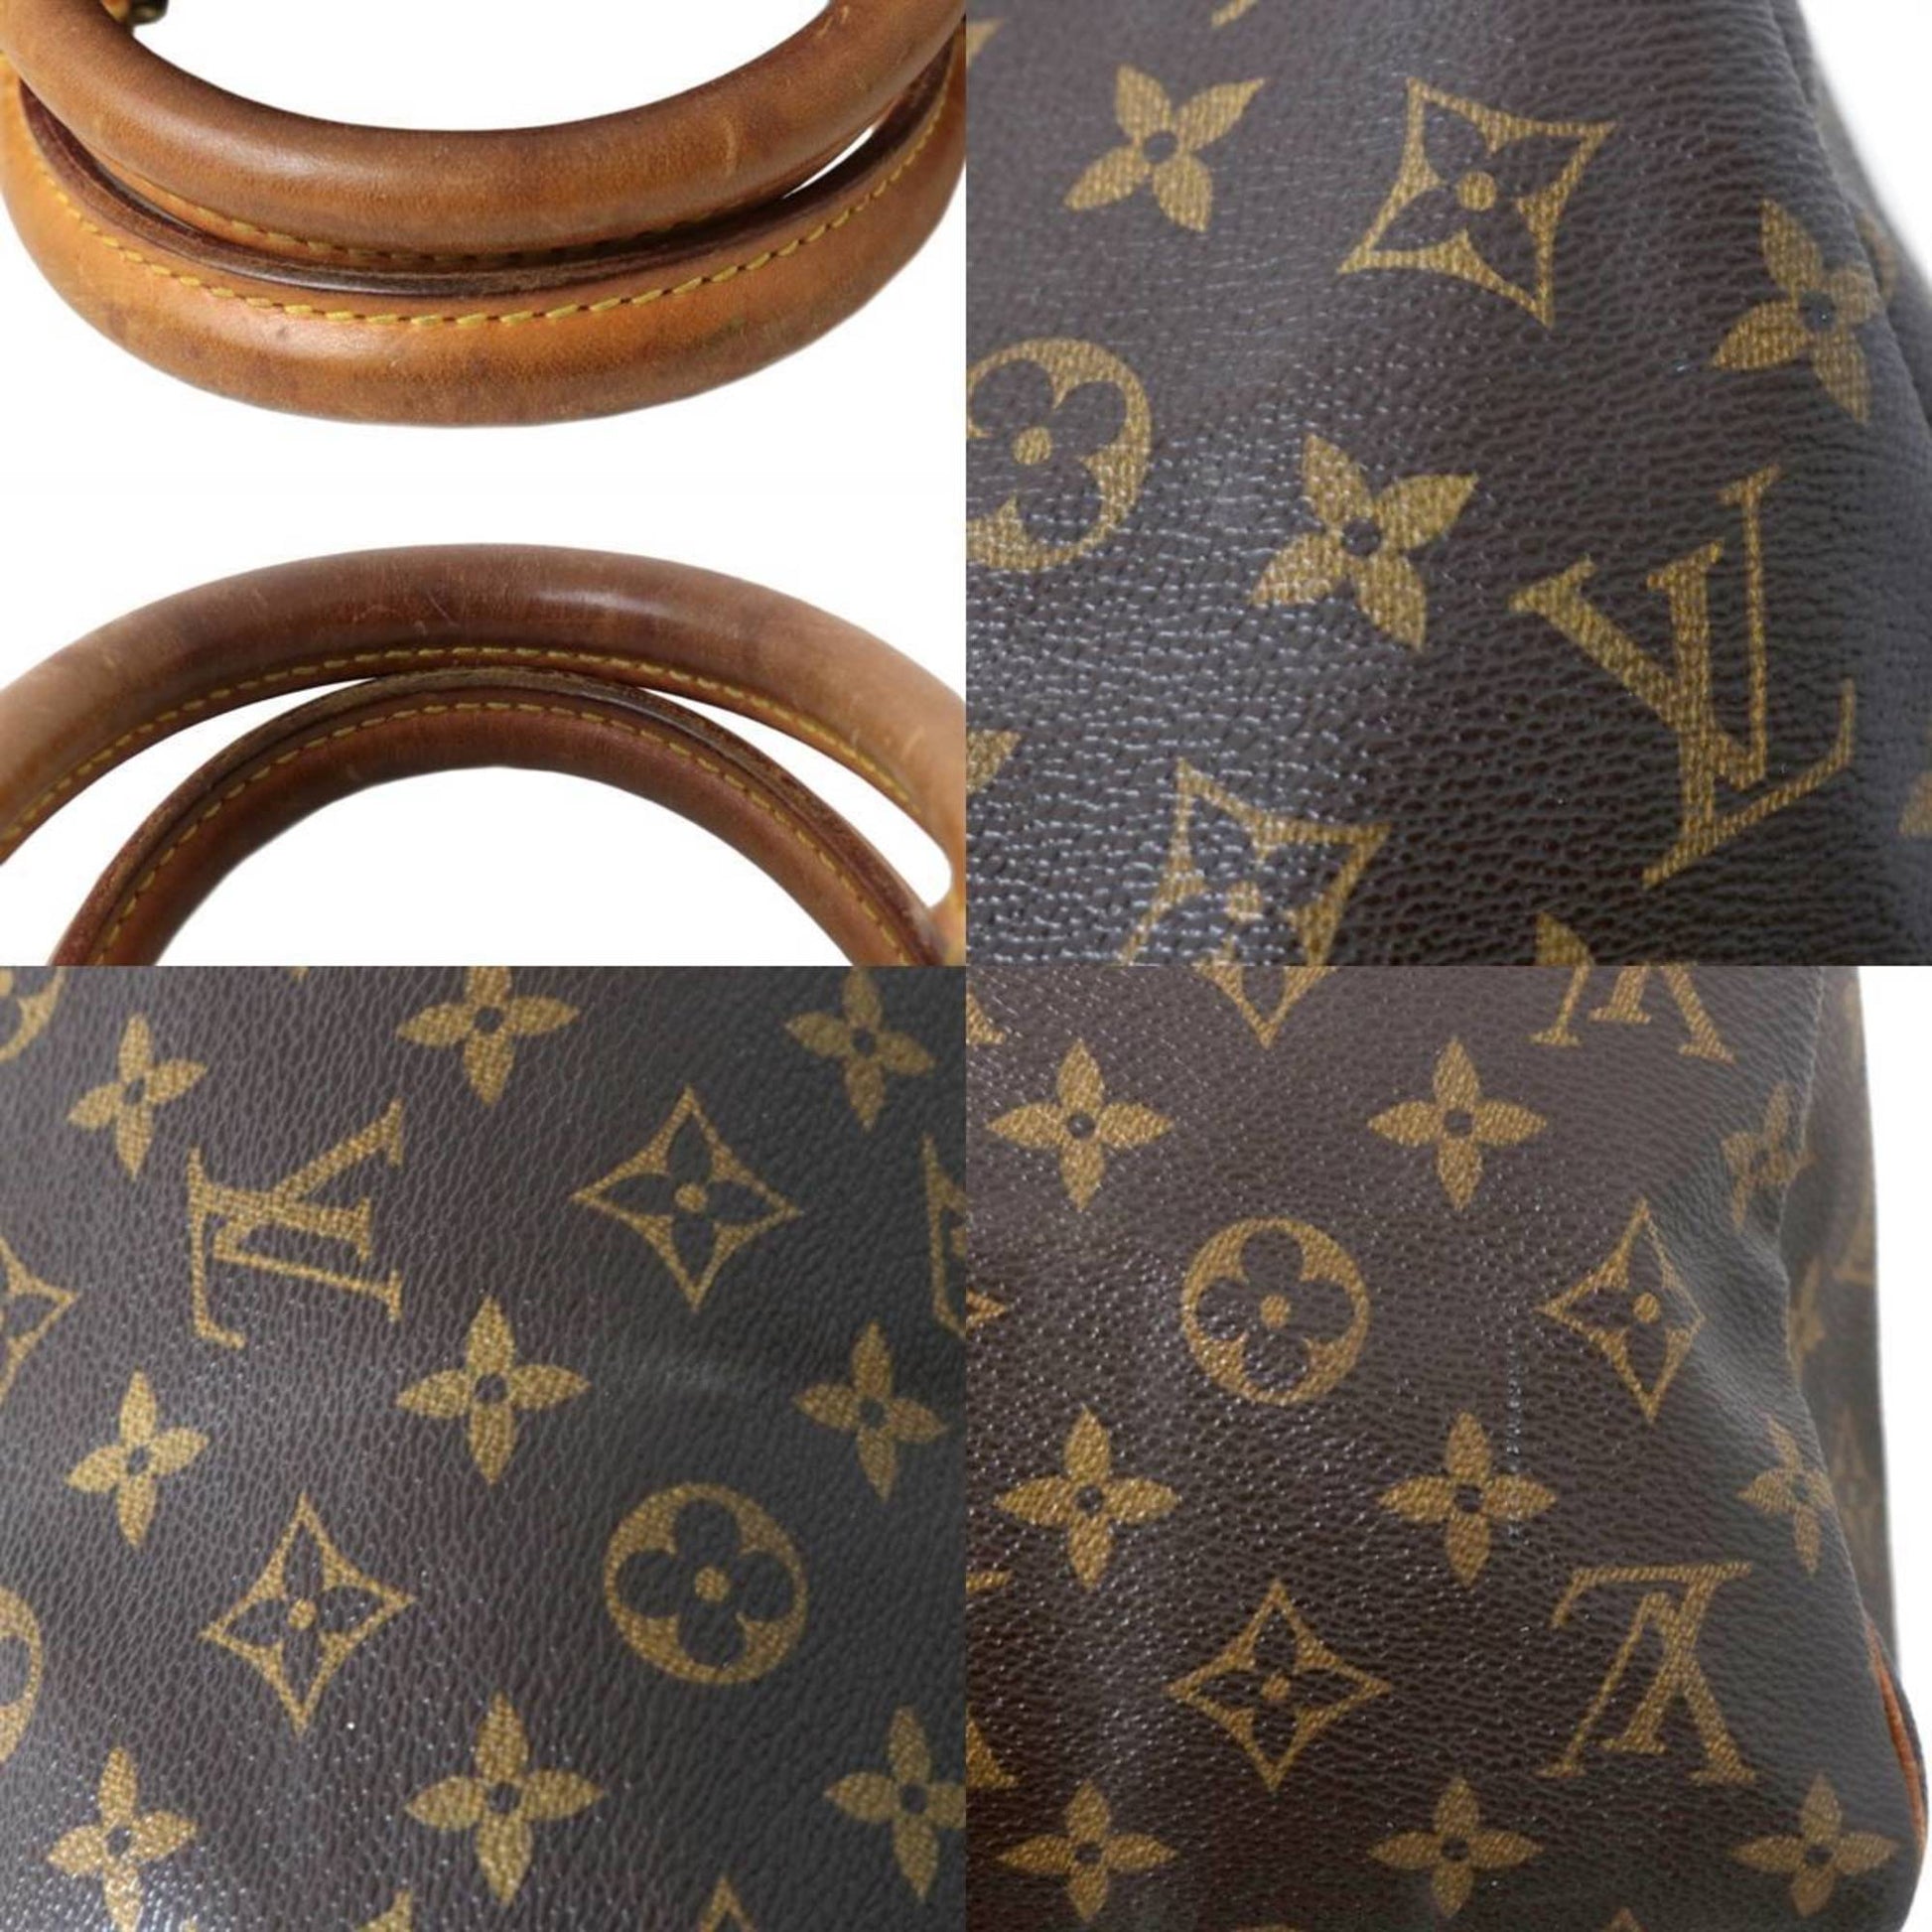 Louis Vuitton Handbag Speedy 35 Brown Monogram M41526 Boston Vl882